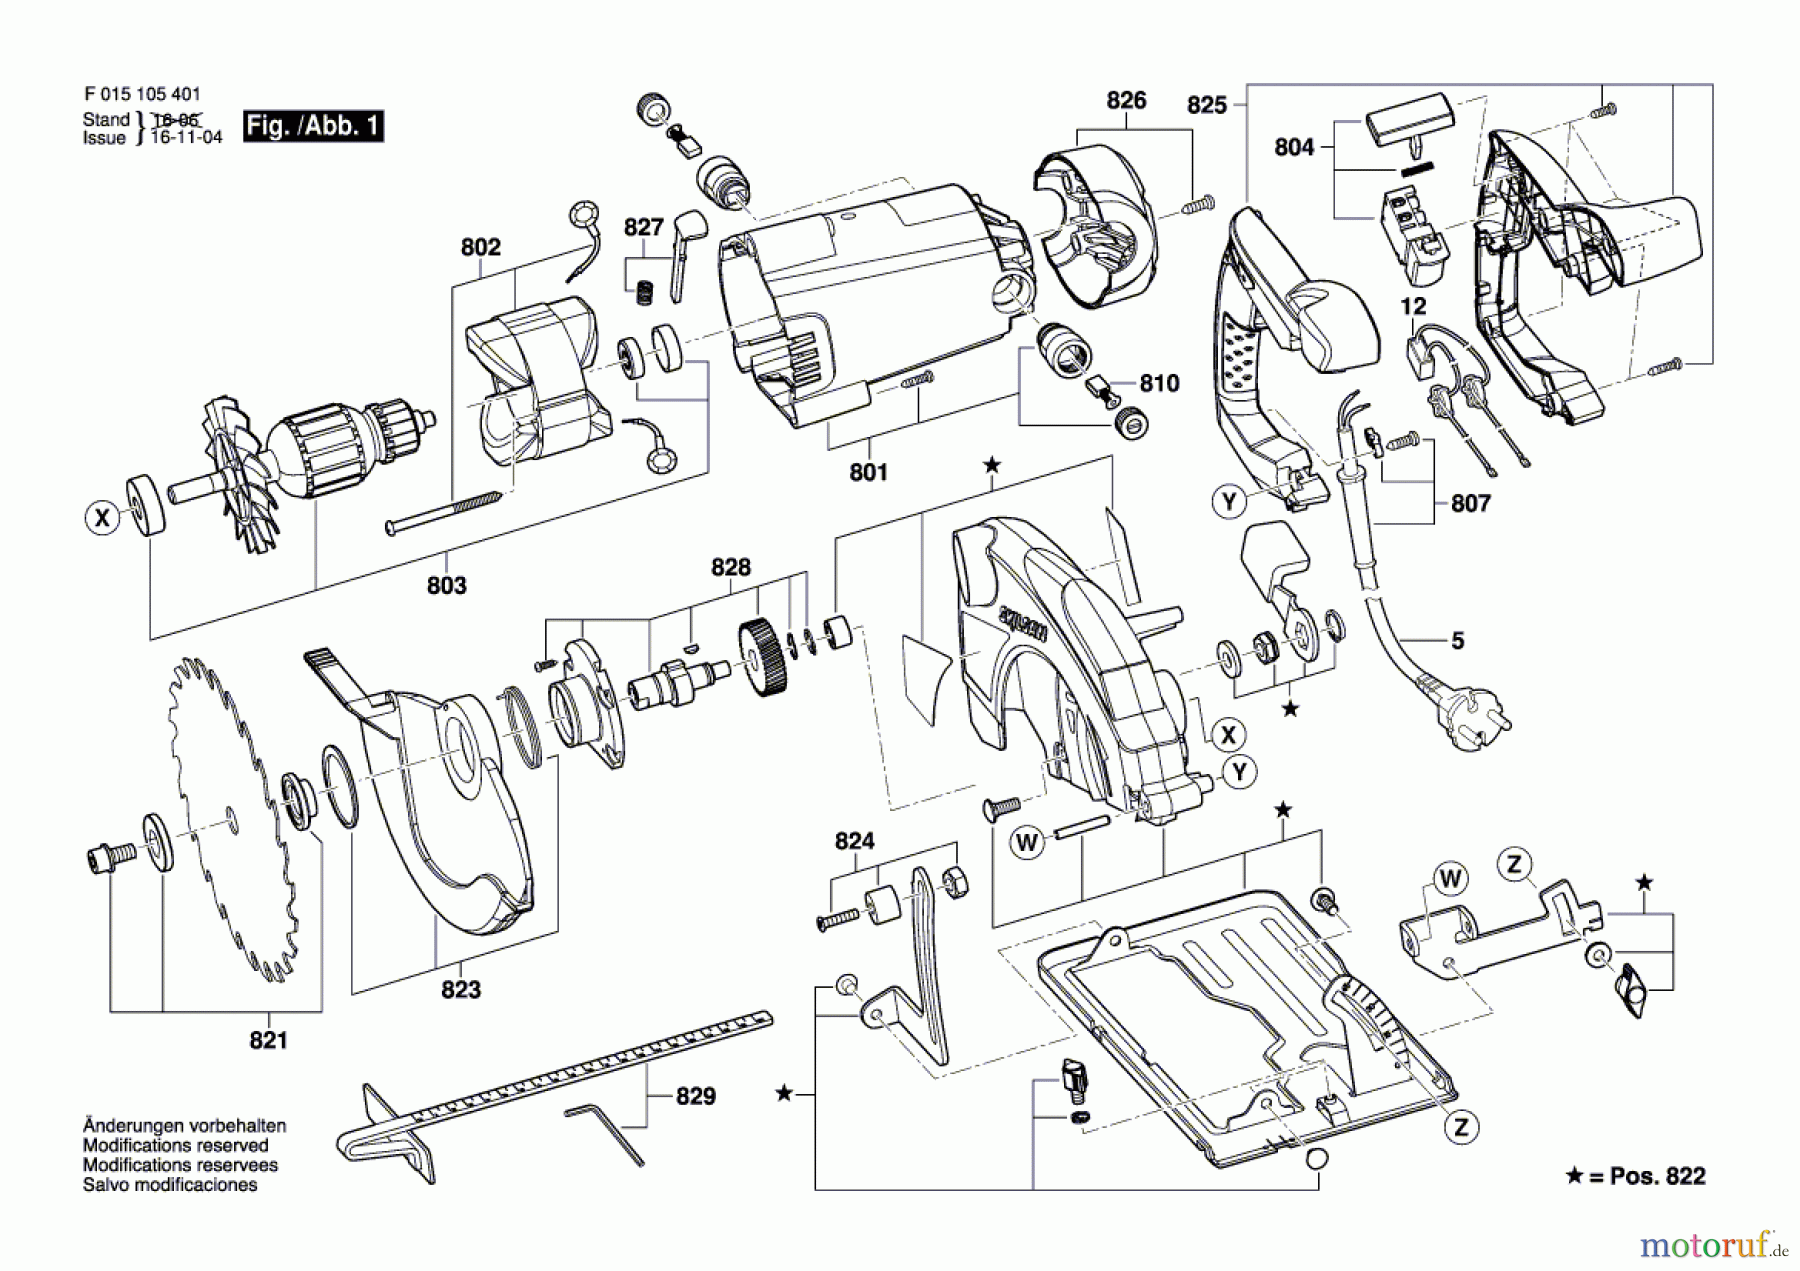  Bosch Werkzeug Handkreissäge 1054 Seite 1